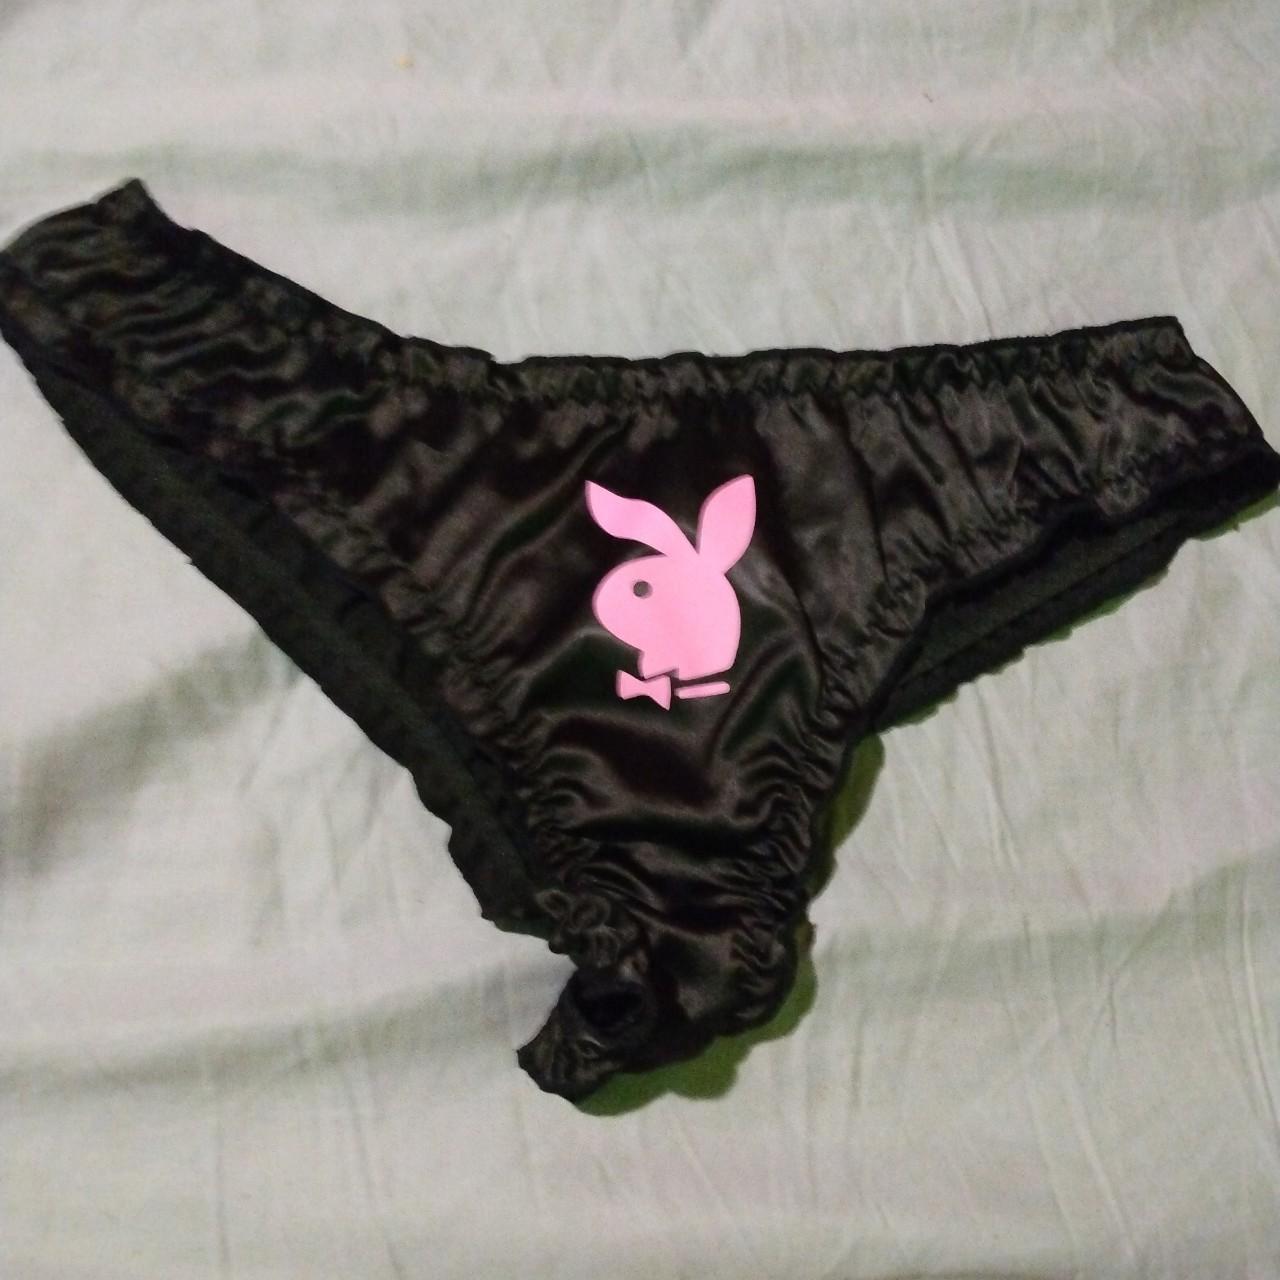 Playboy Women's Pink and Black Panties | Depop